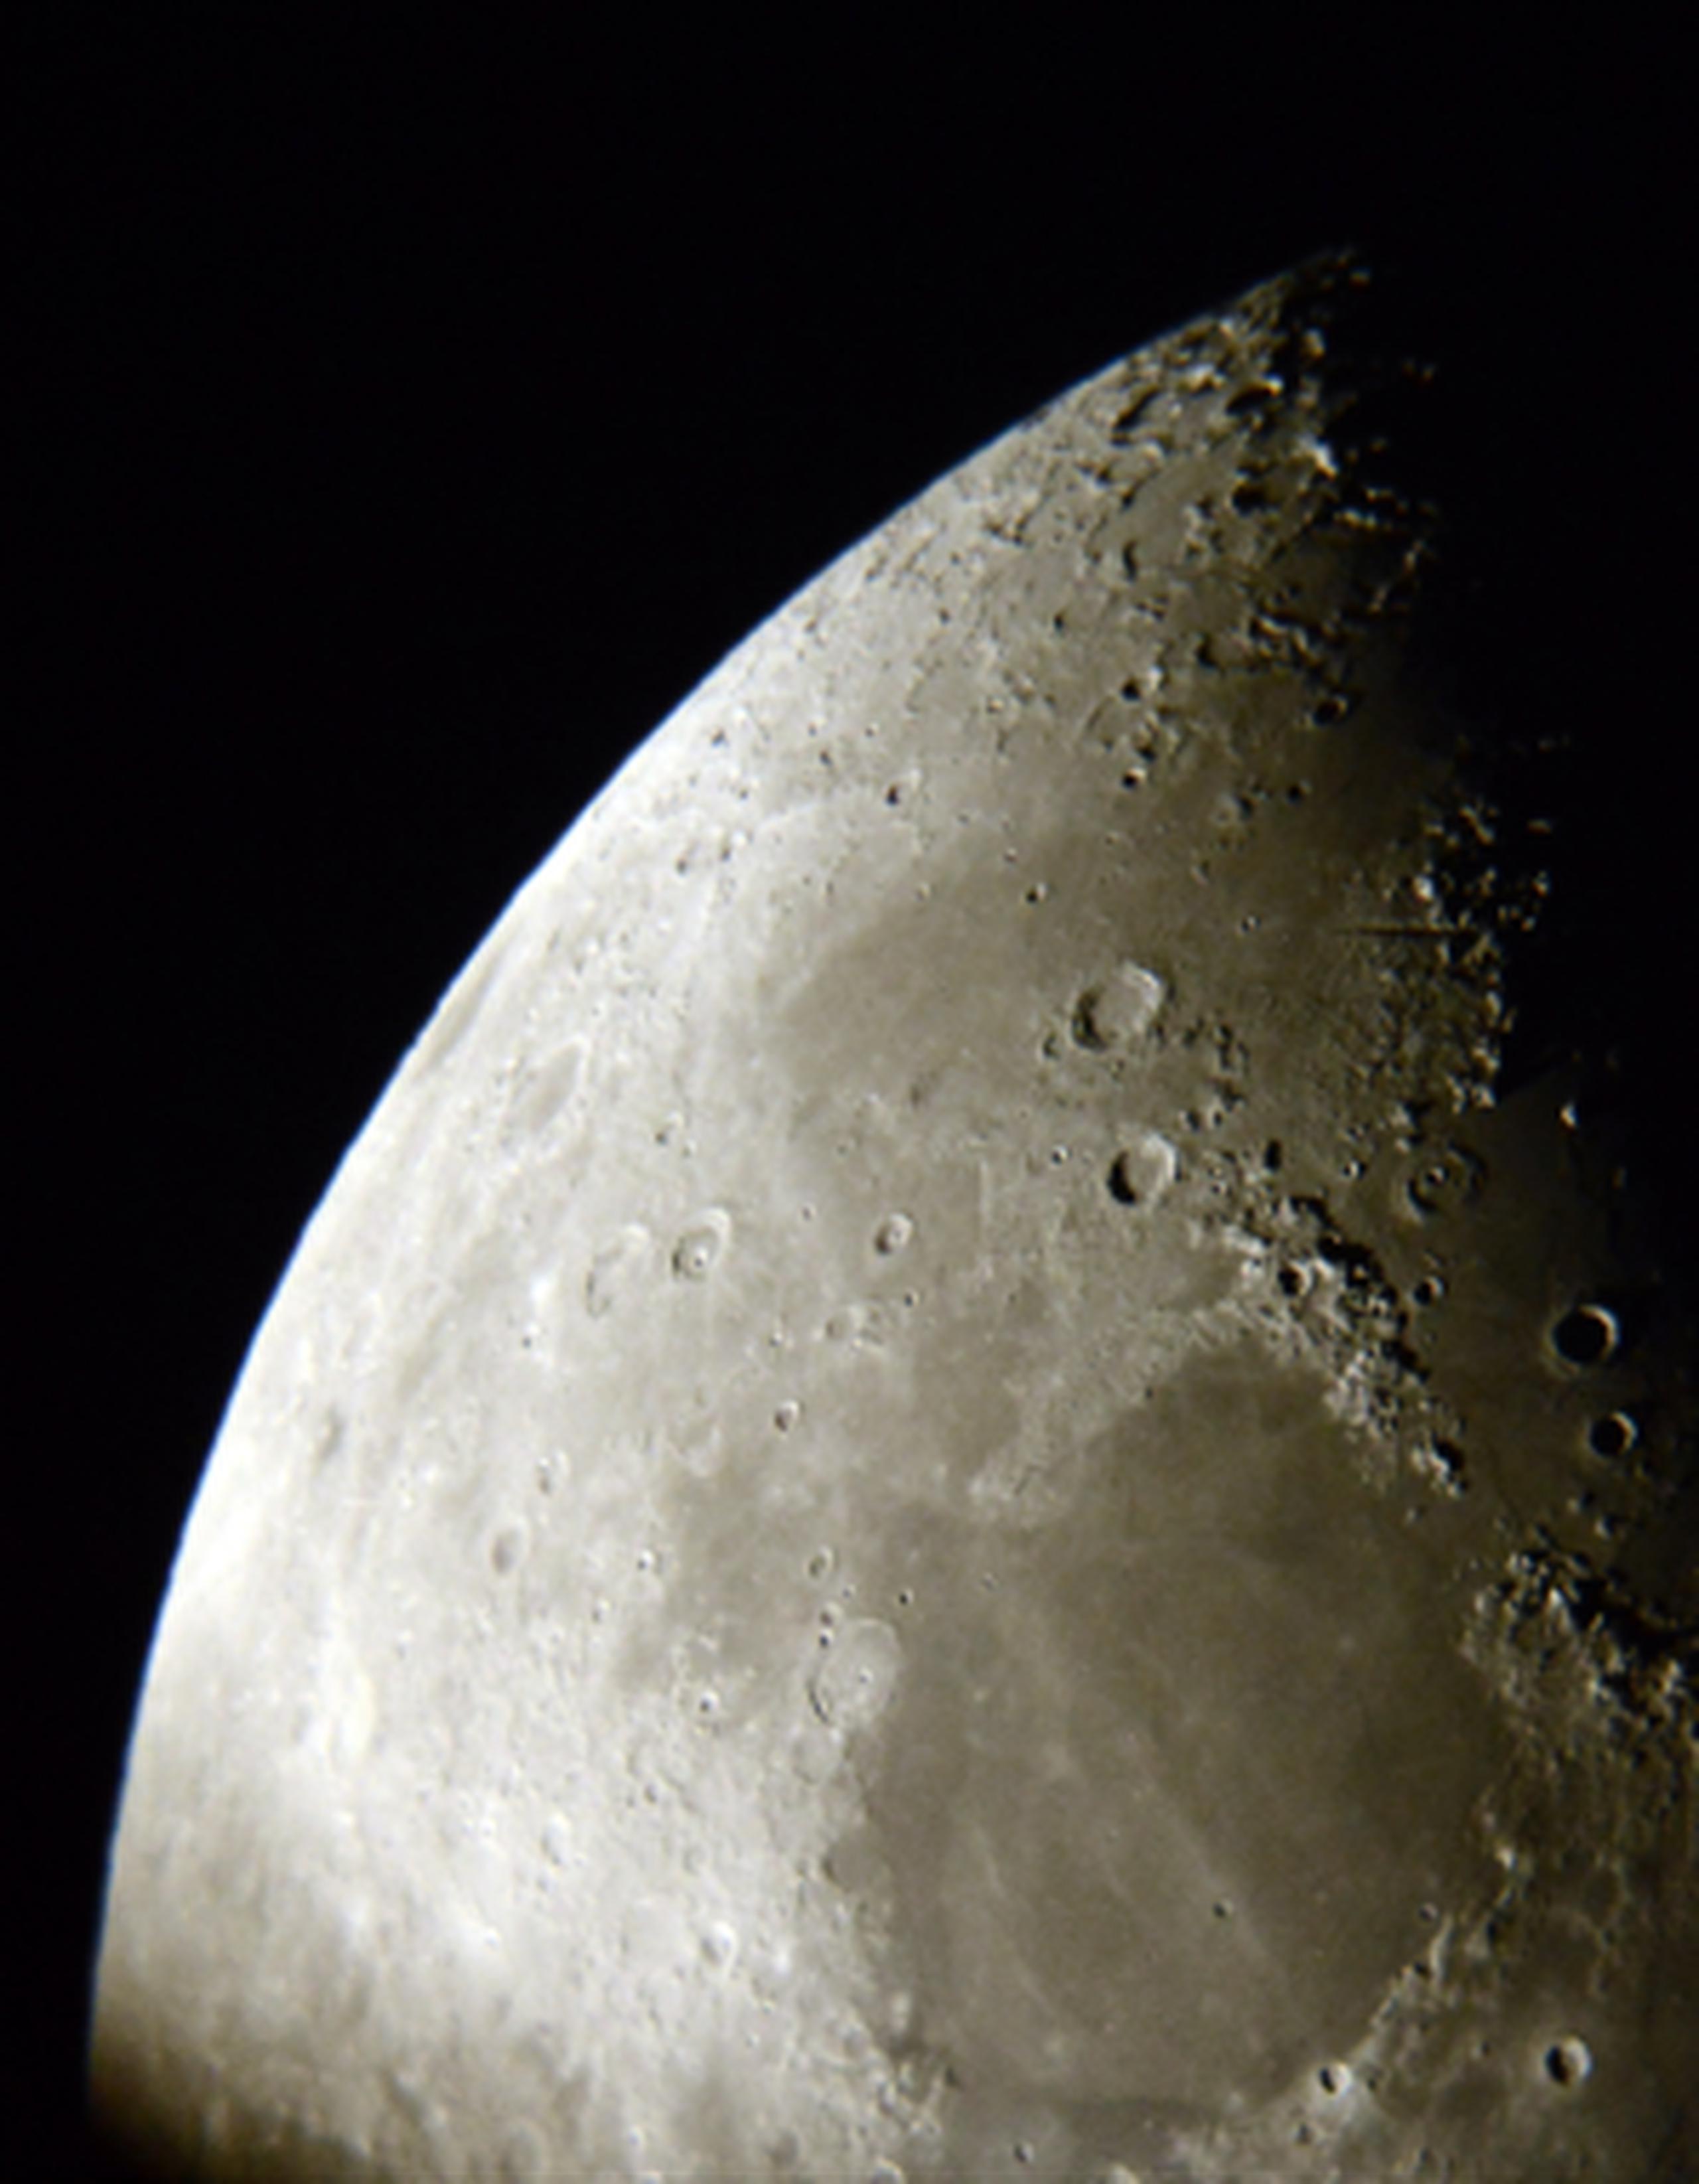 El objeto espacial, del tamaño de una roca grande, golpeó la superficie lunar de Mare Imbrium el 17 de marzo, indicó la NASA. (Archivo)